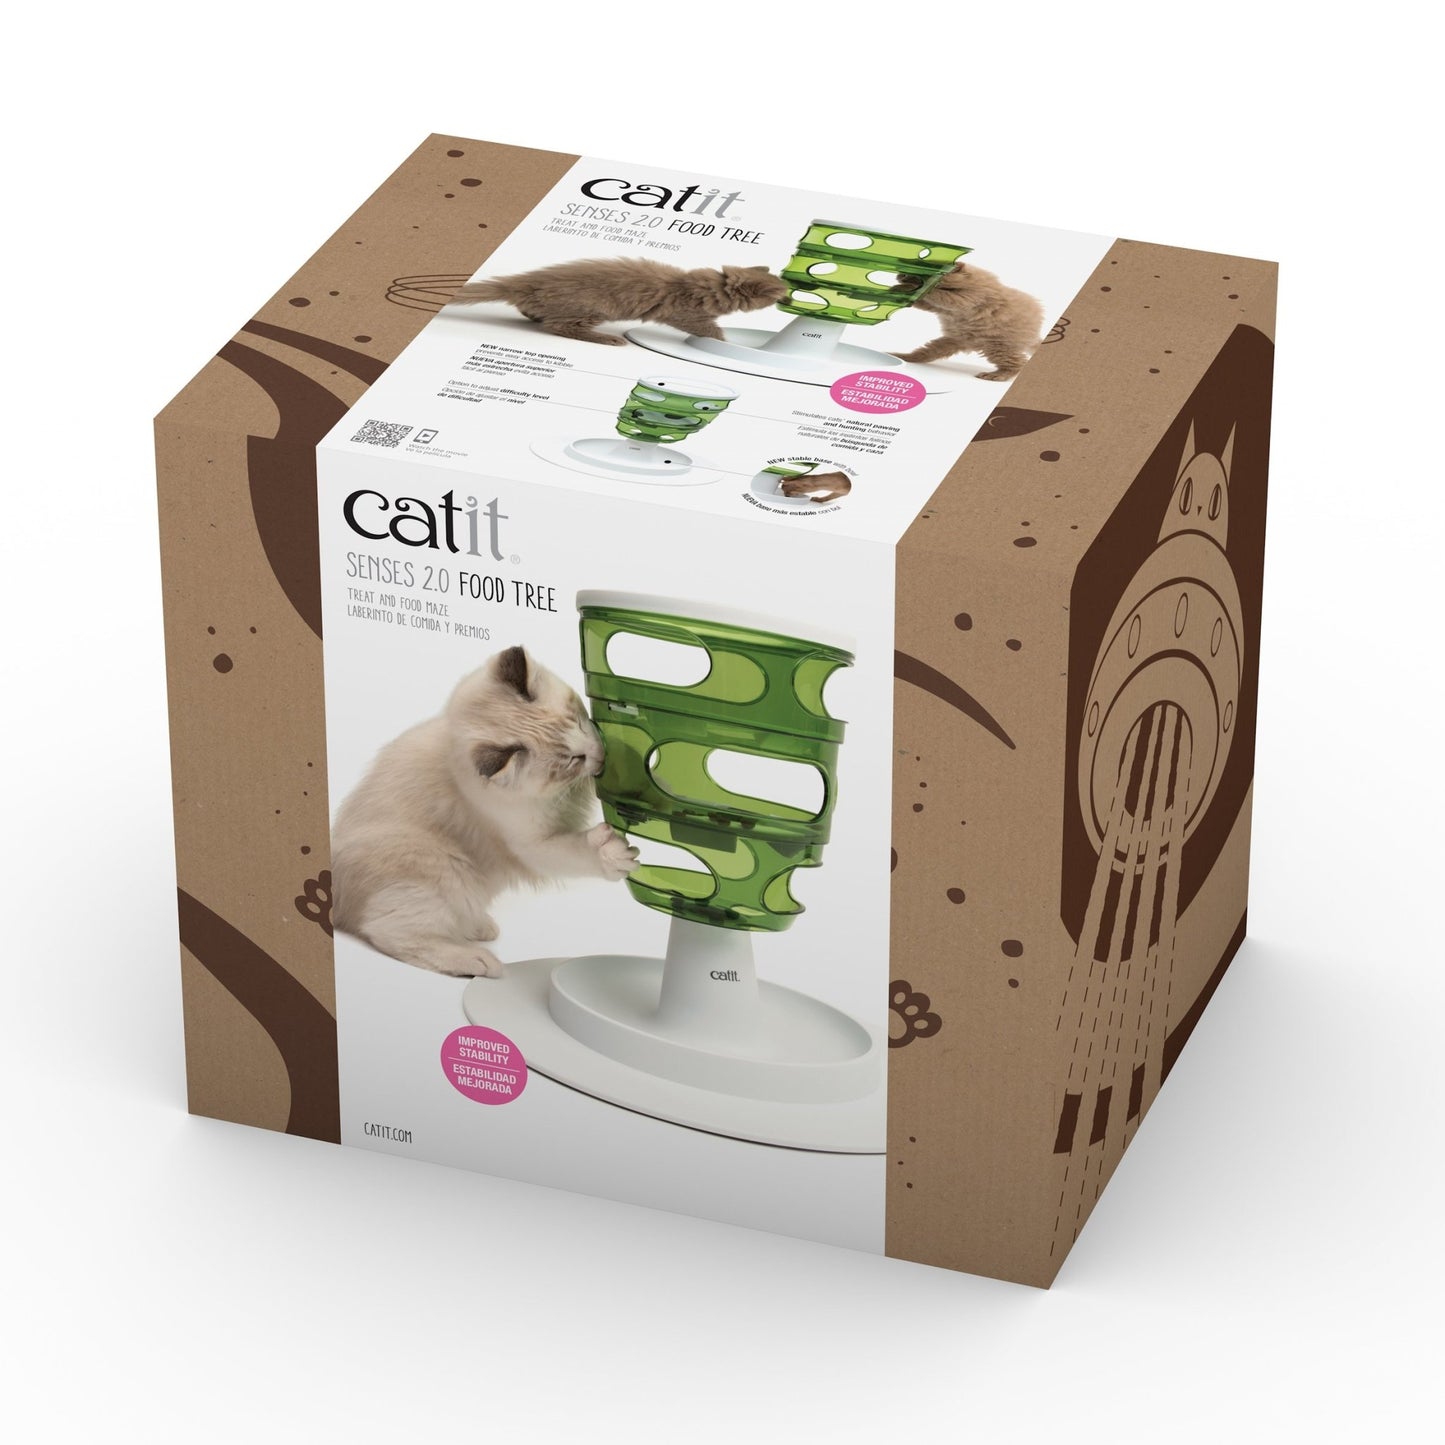 Catit 2.0 Senses Food Tree - Woonona Petfood & Produce